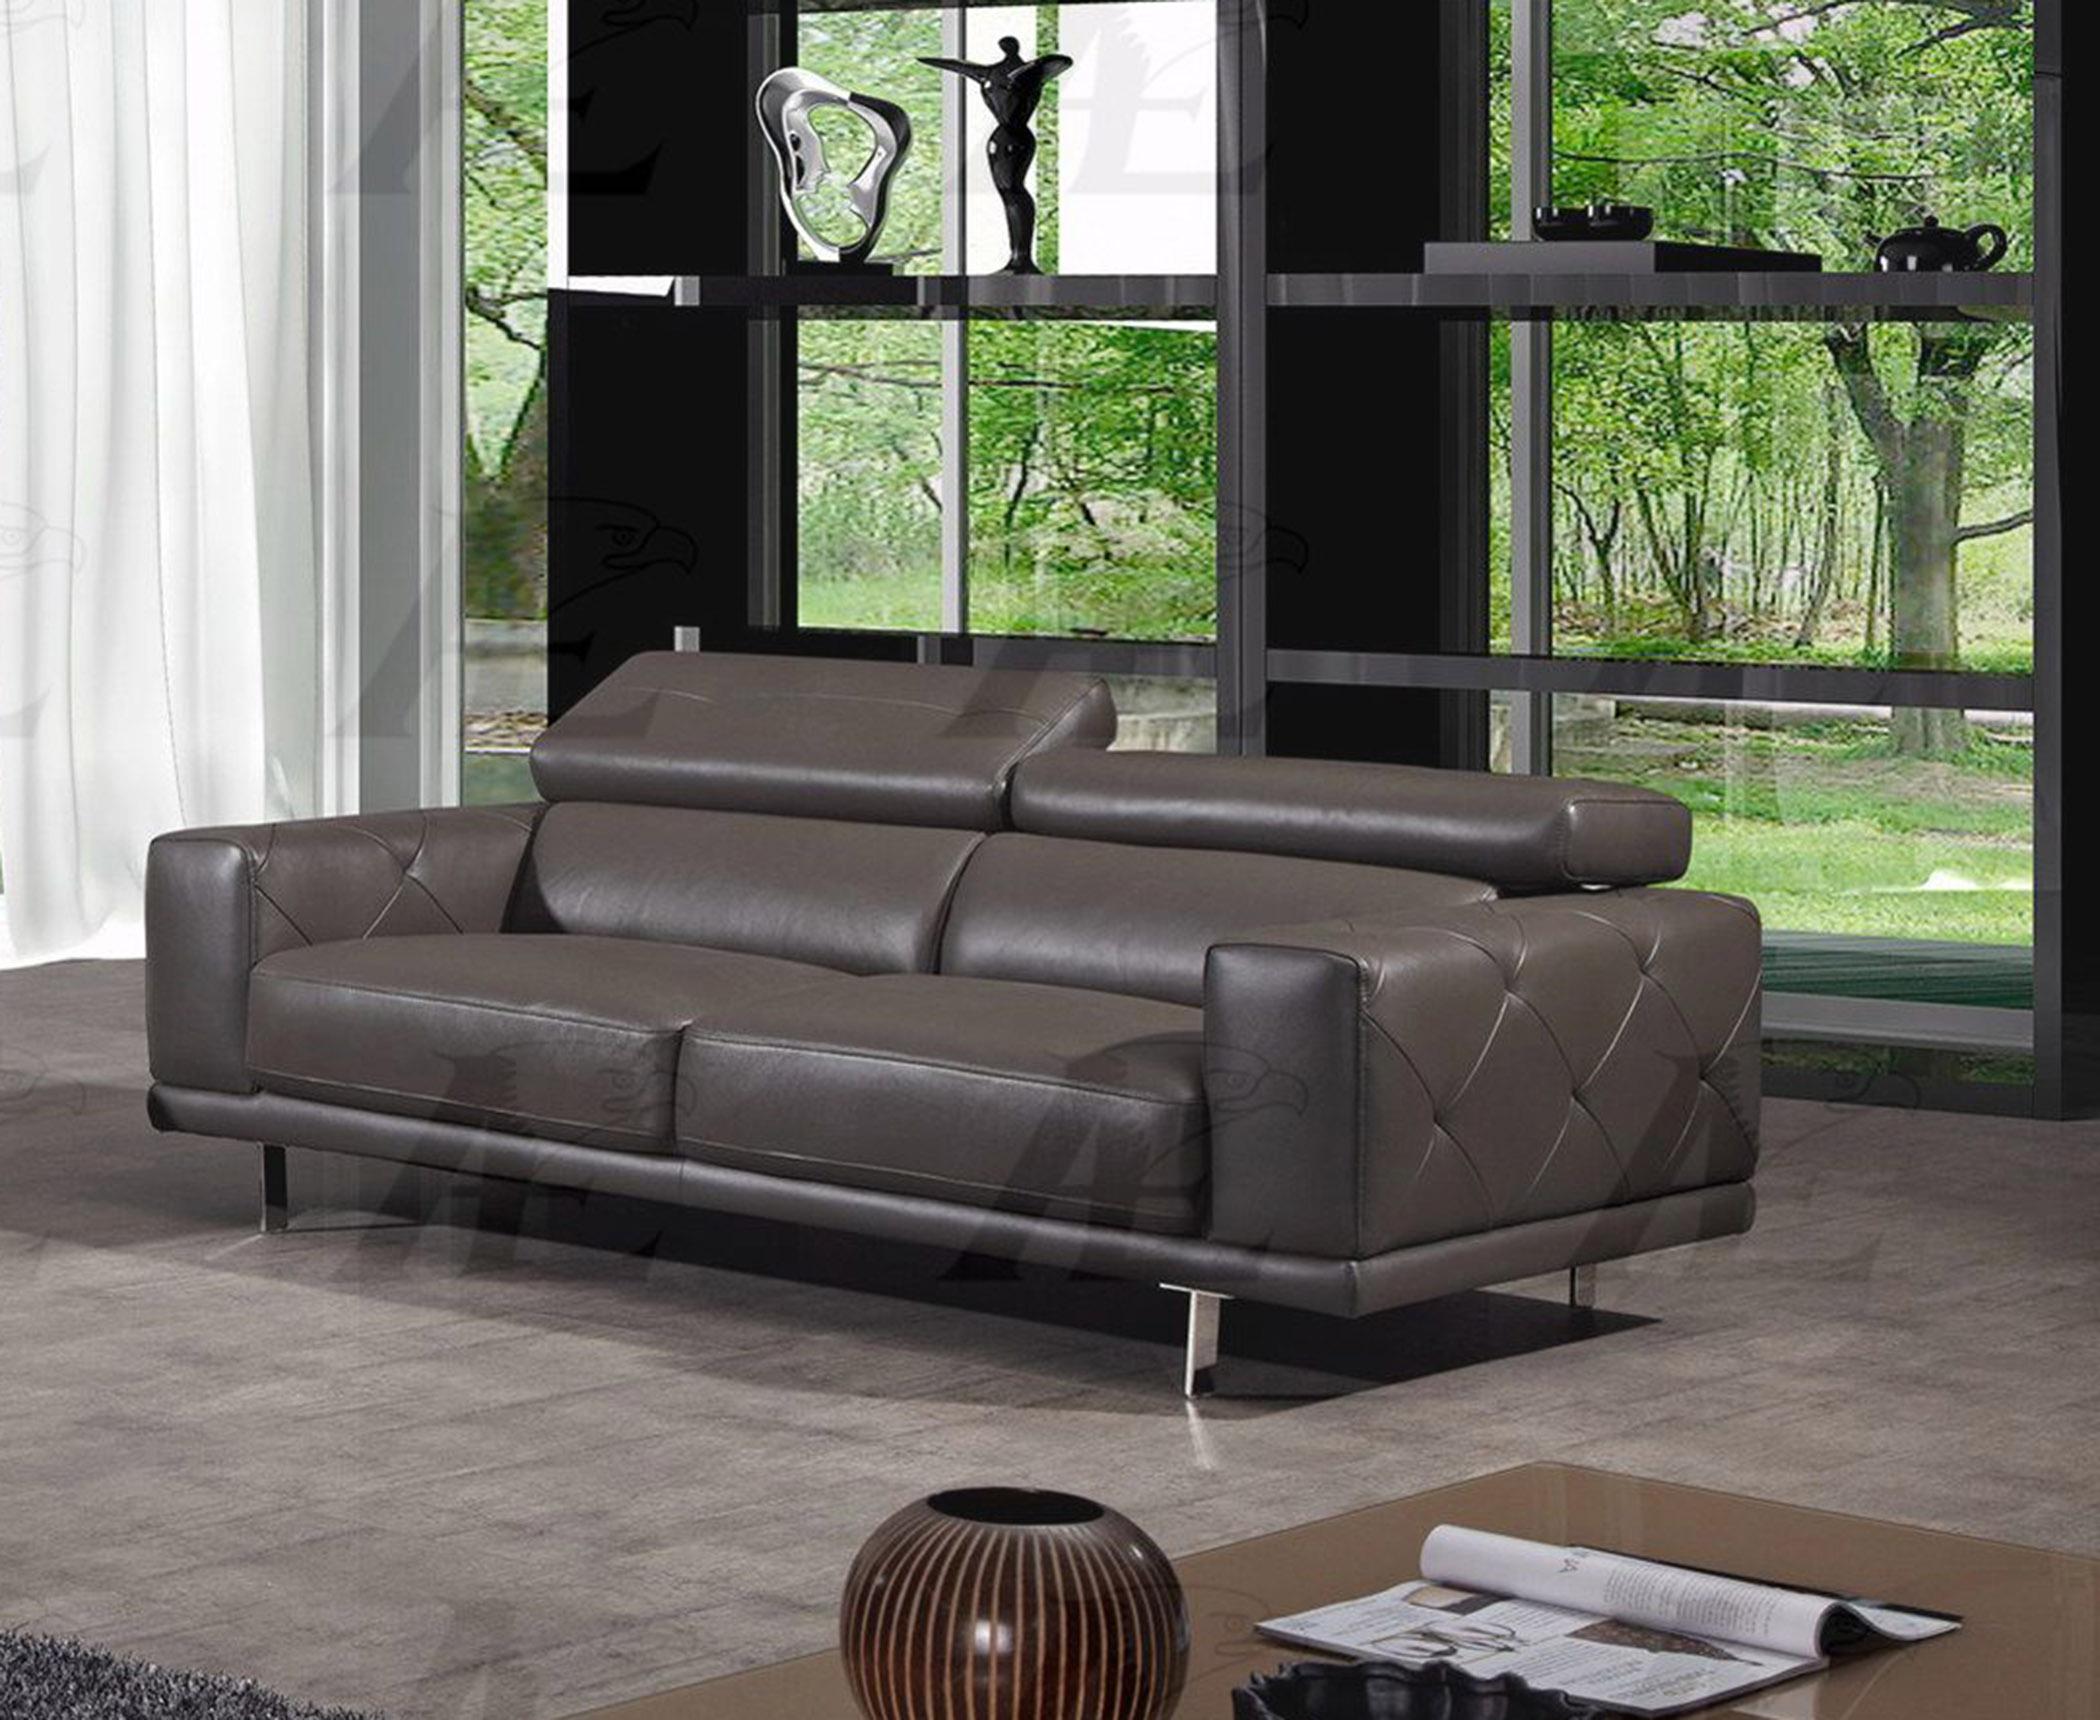 

    
American Eagle Furniture EK039-TPE Taupe Tufted Sofa Italian Leather
